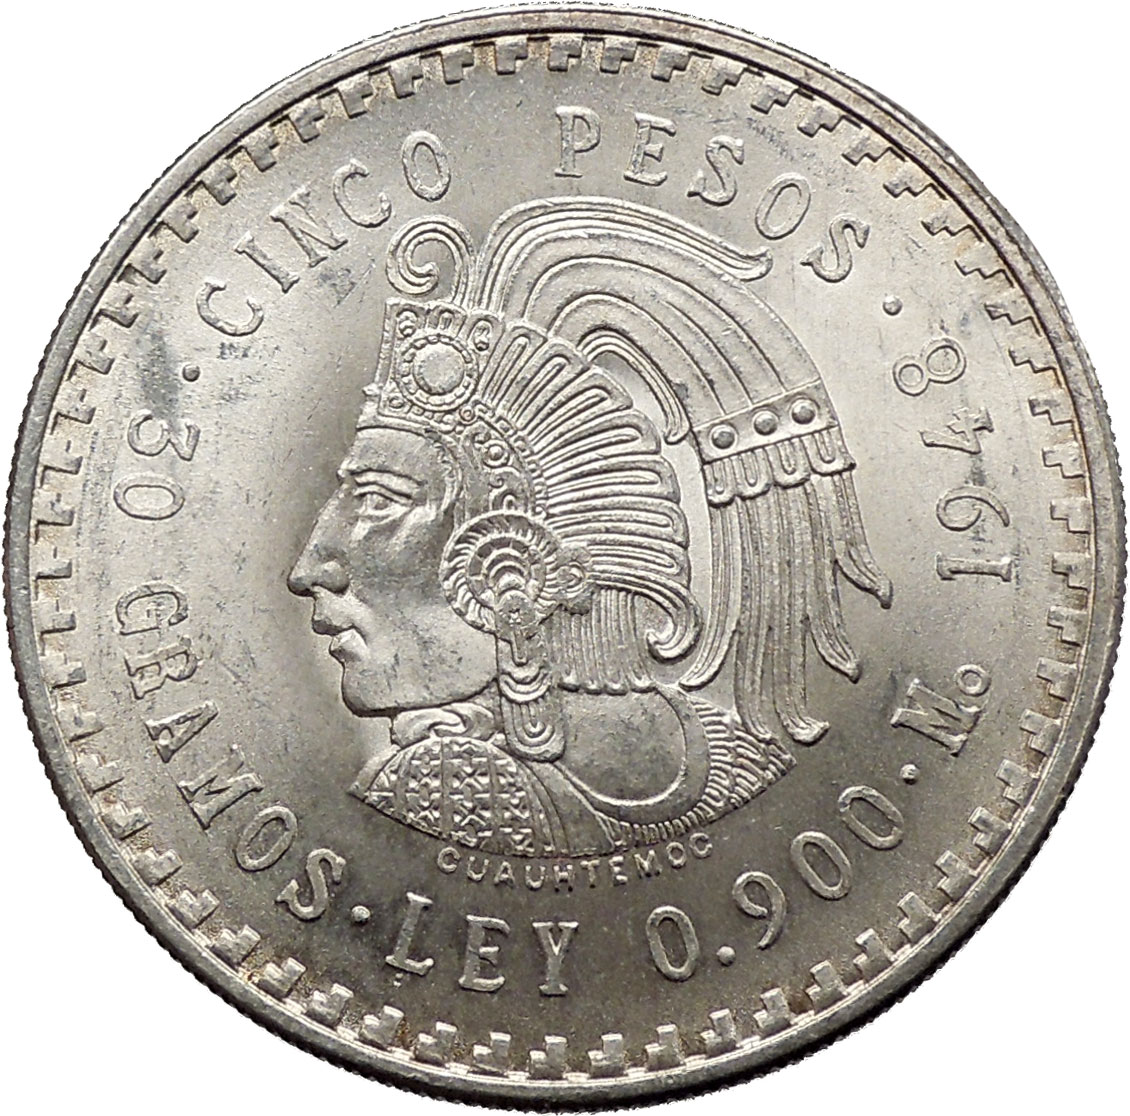 1948 Mexico City Five Pesos Mexican Coat of Arms Silver Mexican Coin ...